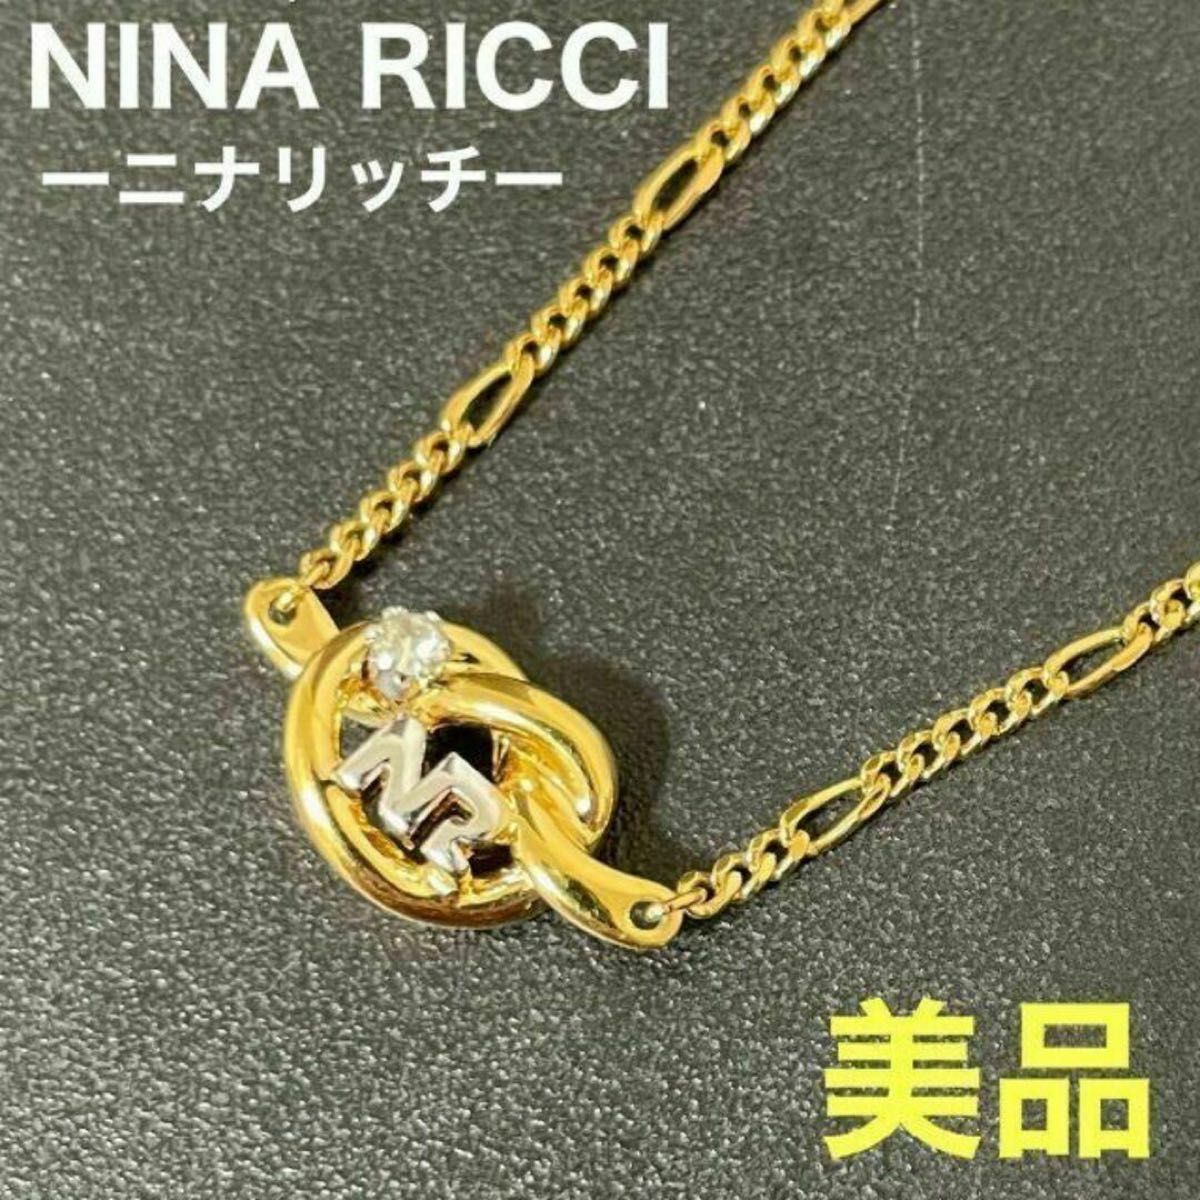 Nina Ricci（ニナリッチ）ヴィンテージ ネックレス メタルゴールド